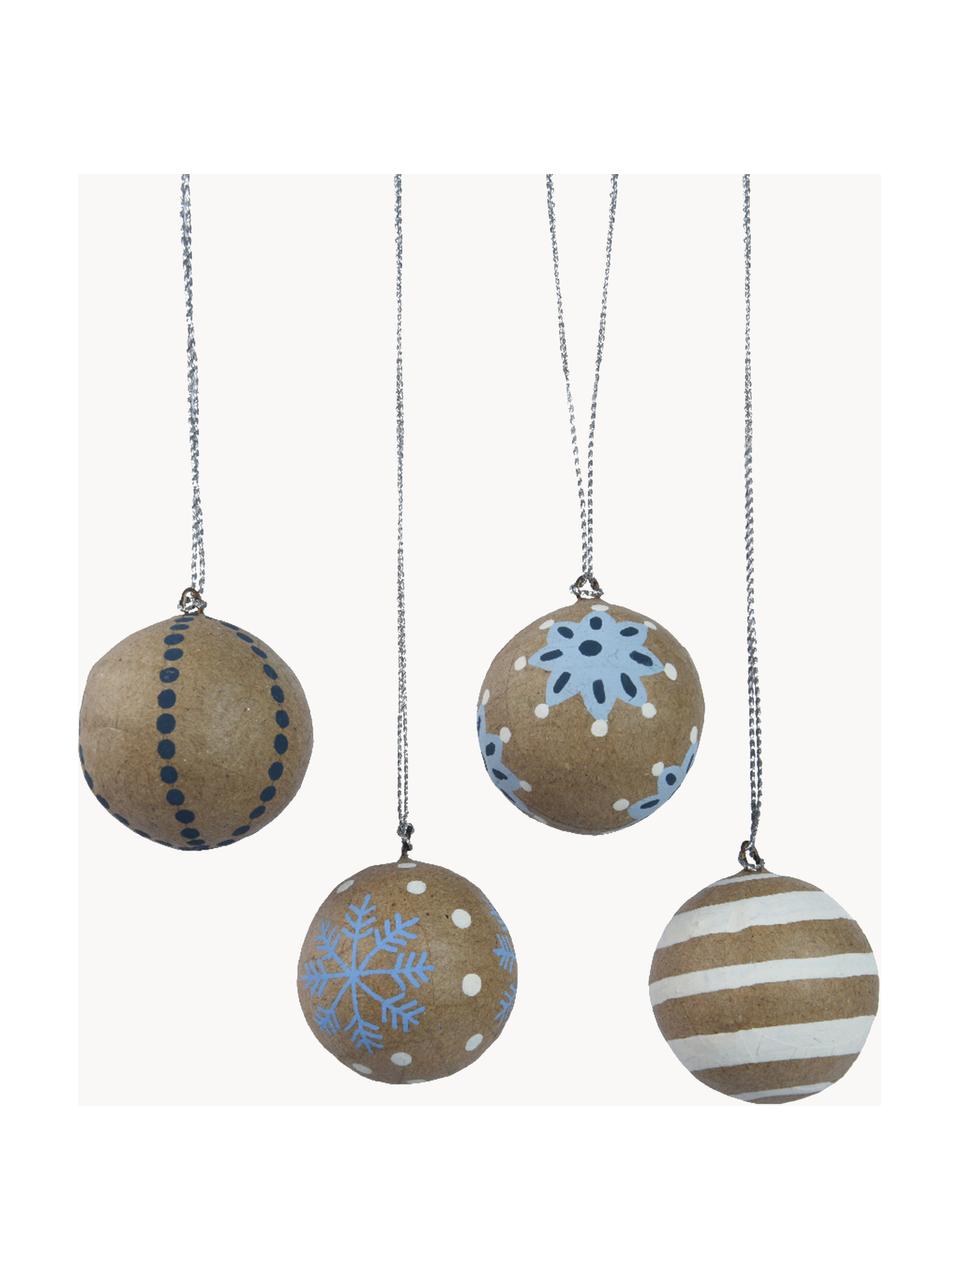 Set de bola de Navidad Moody, 4 uds., Tejido de papel, Marrón, blanco, azul, Ø 3 cm